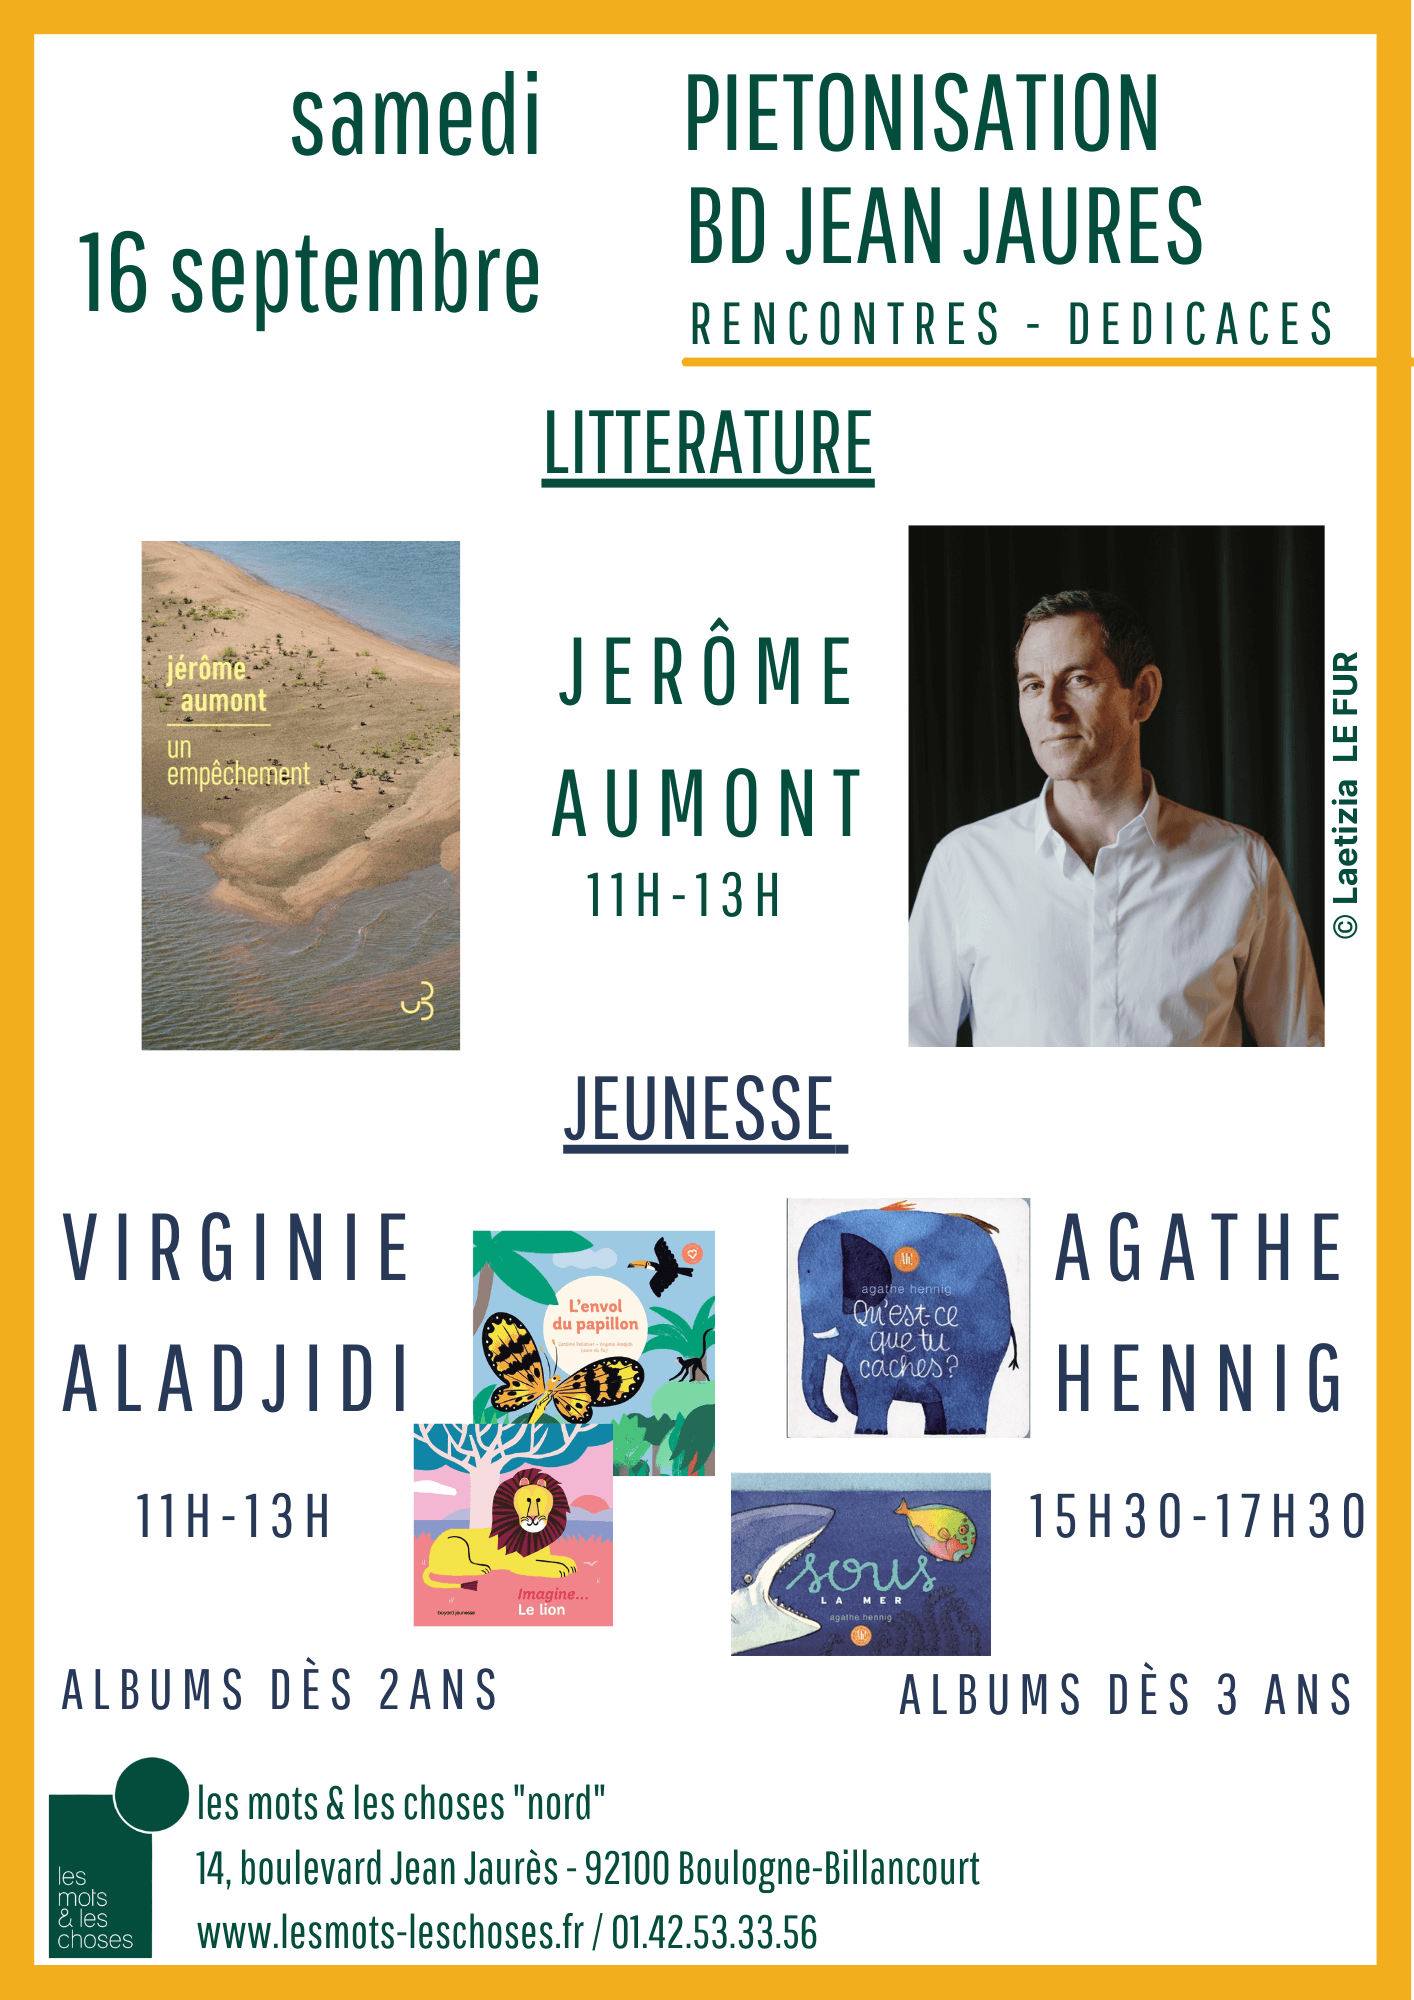  Un empêchement - Aumont, Jérôme - Livres